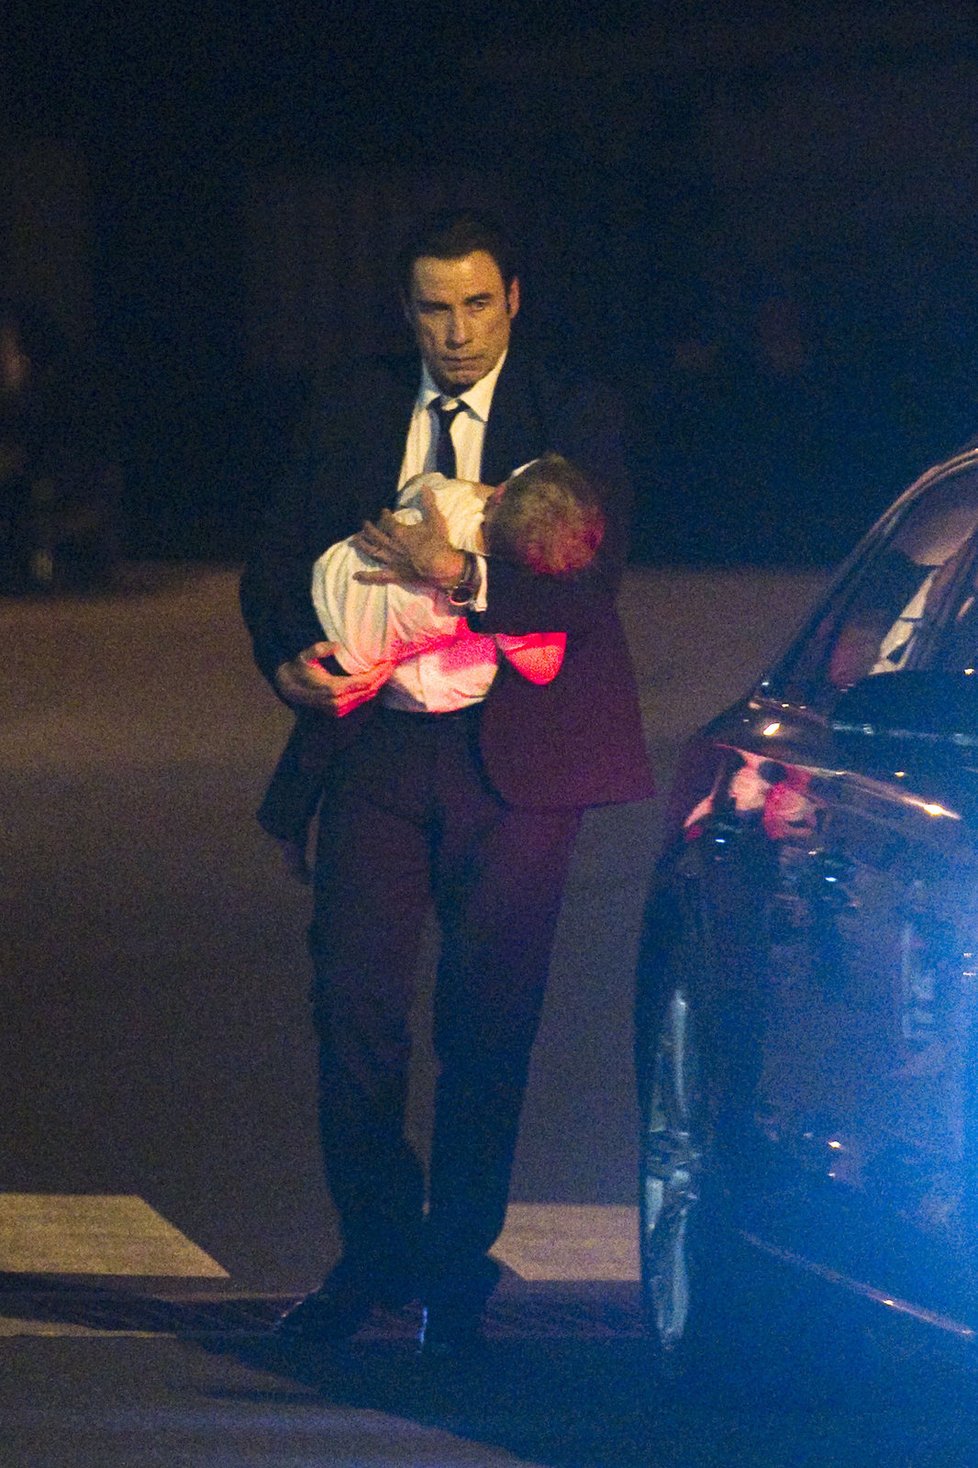 Pyšný otec John Travolta (59) při příletu do Karlových Varů. V náručí drží svého synka Benjamina (3).